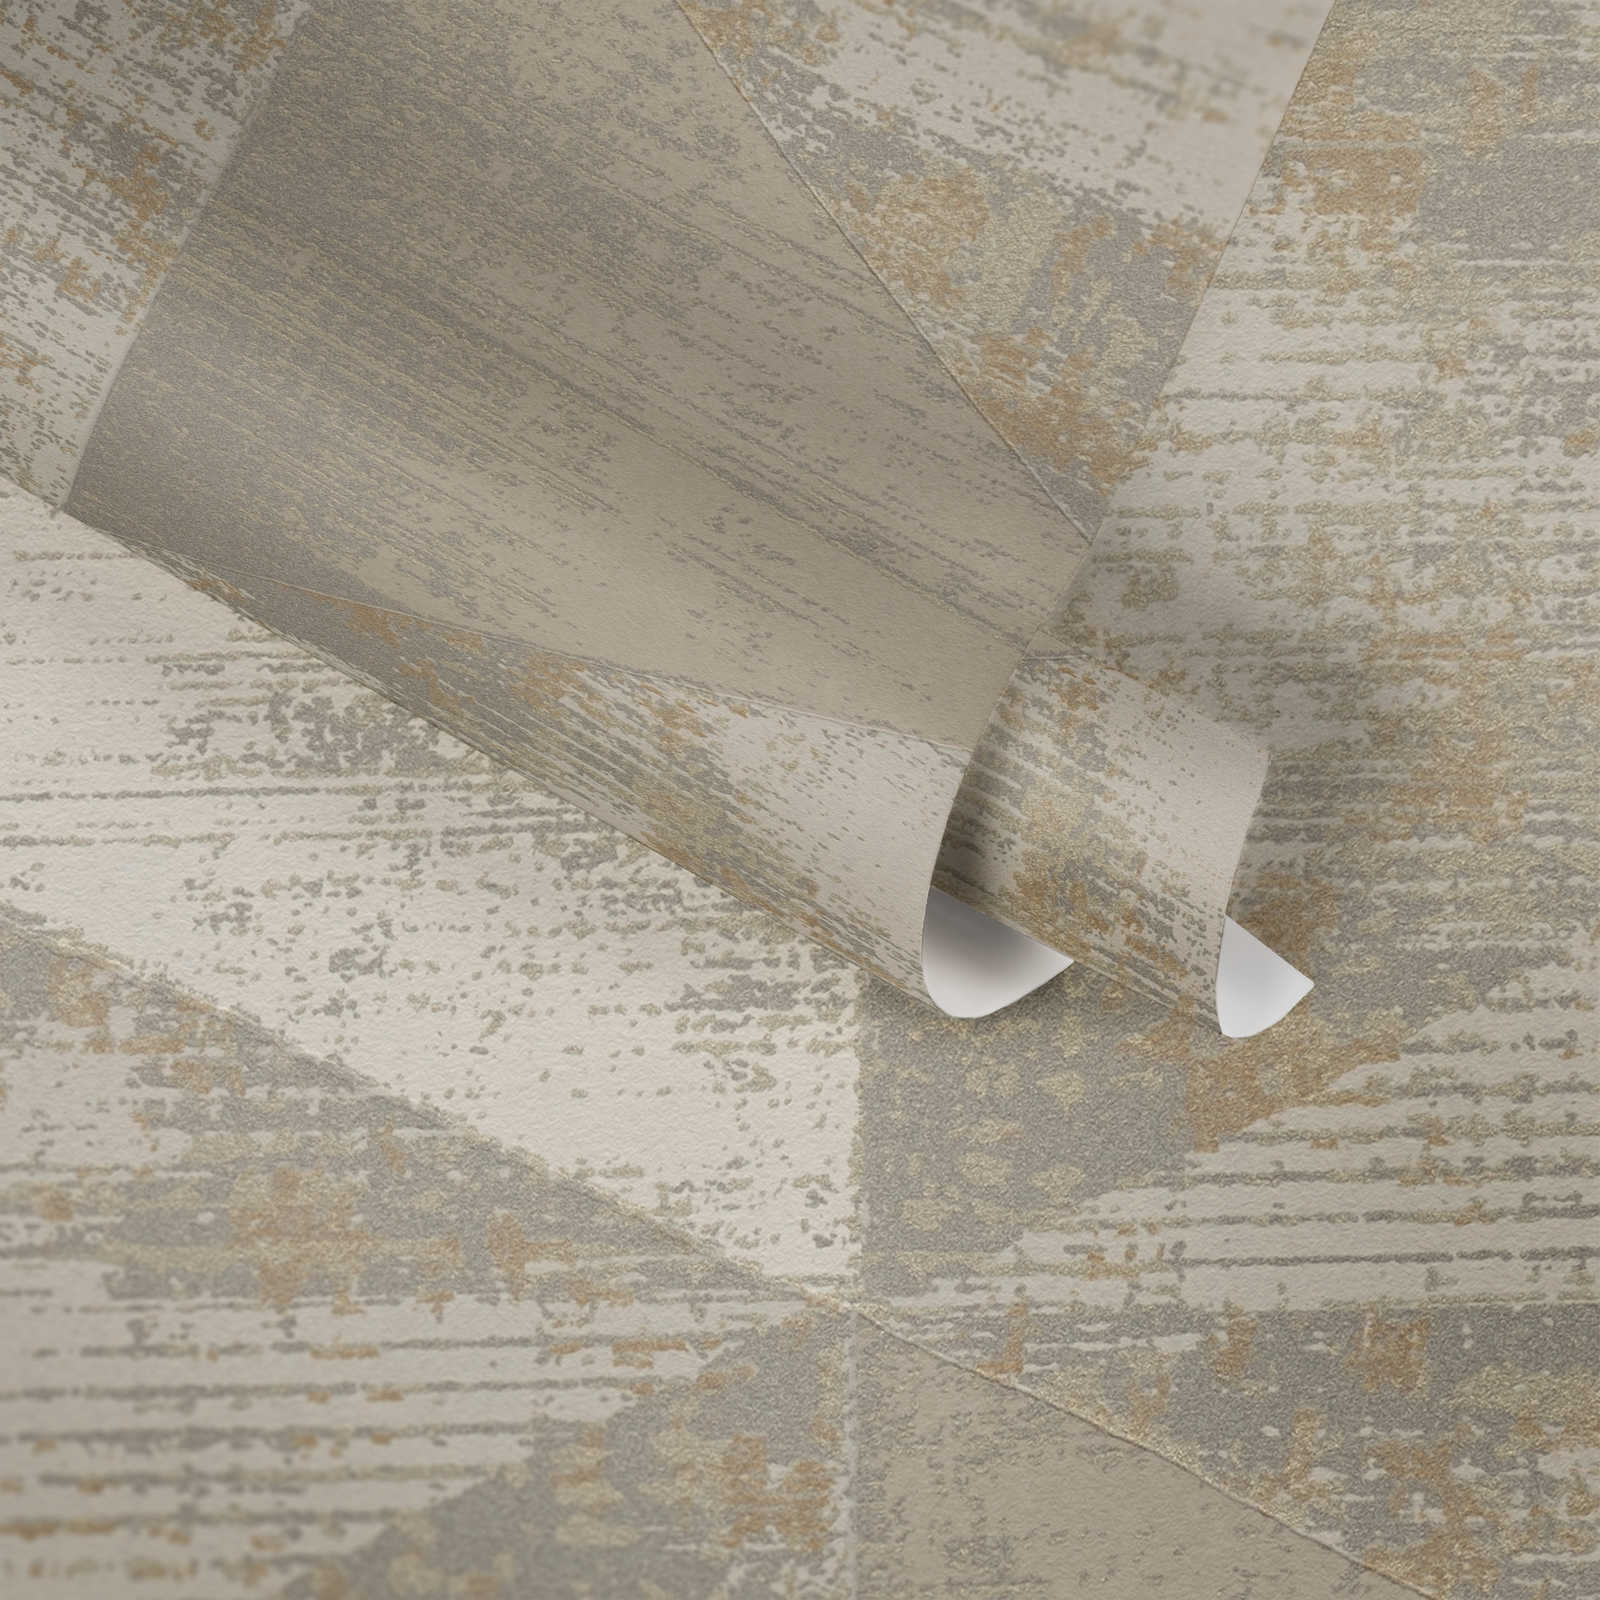             Behang industriële stijl met rustieke metallic look - metallic, beige, grijs
        